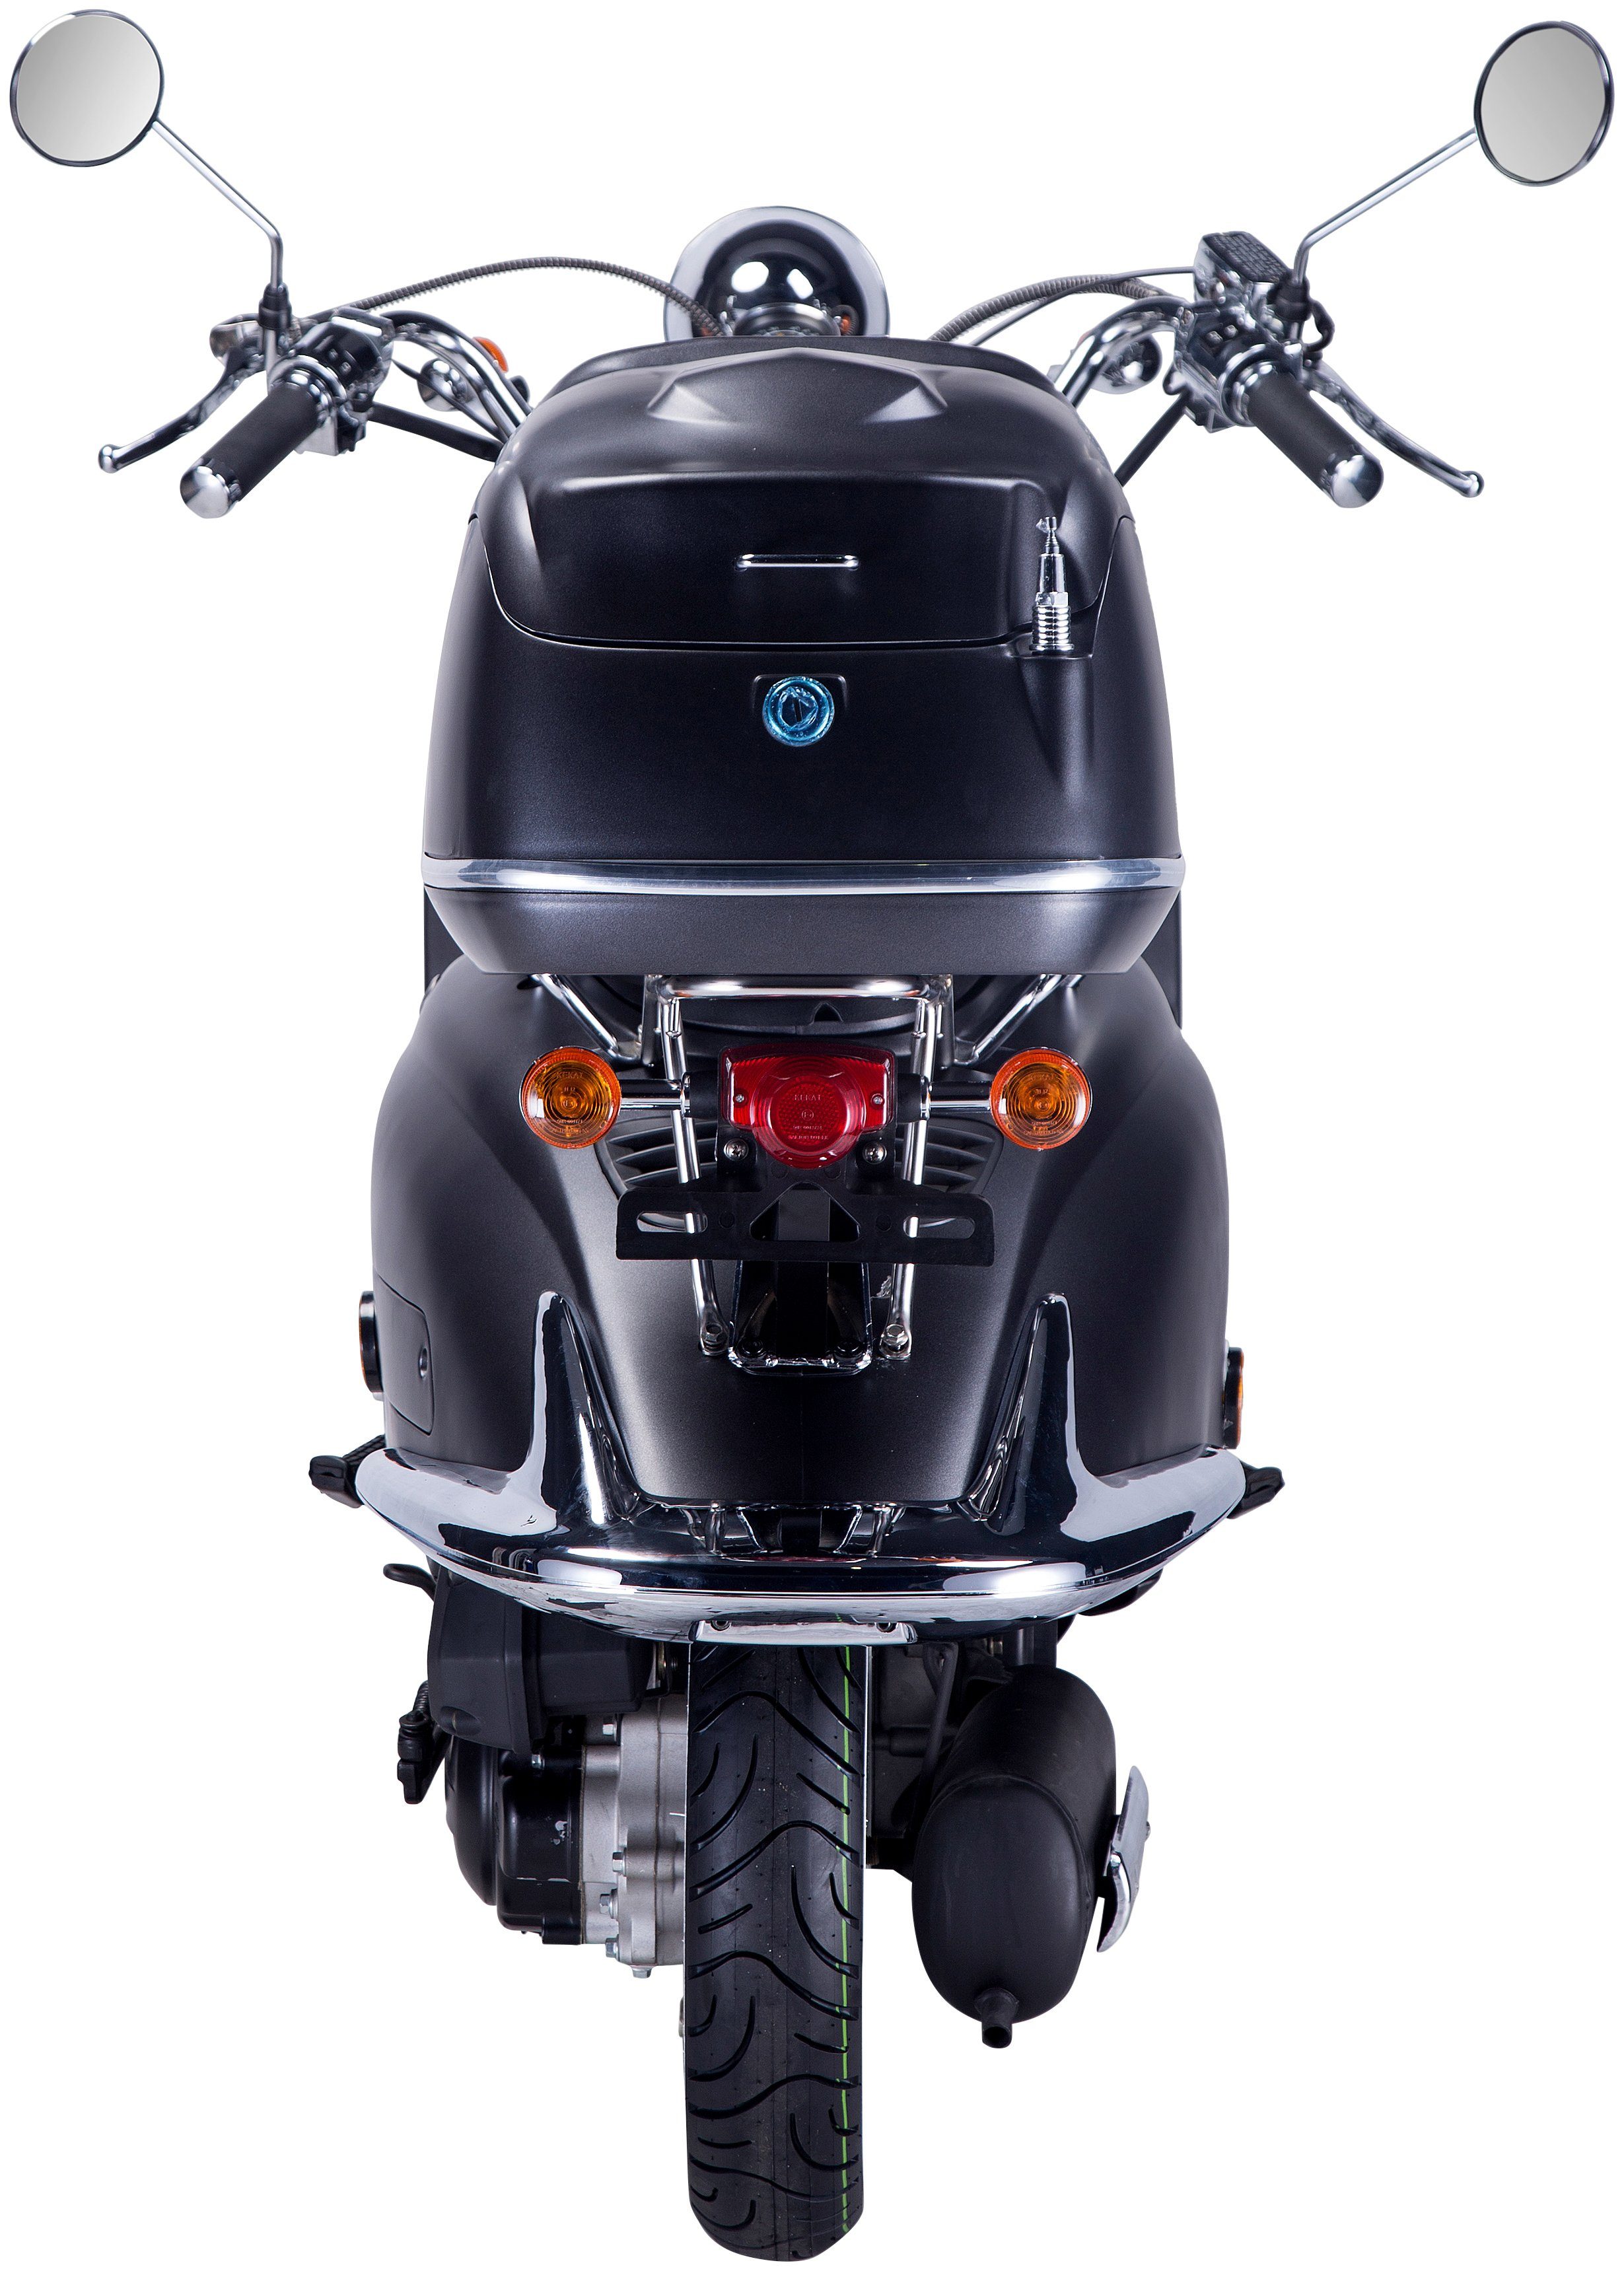 Strada, 85 Motorroller GT UNION km/h, ccm, mit Topcase 125 Euro 5, schwarz/silberfarben (Set),